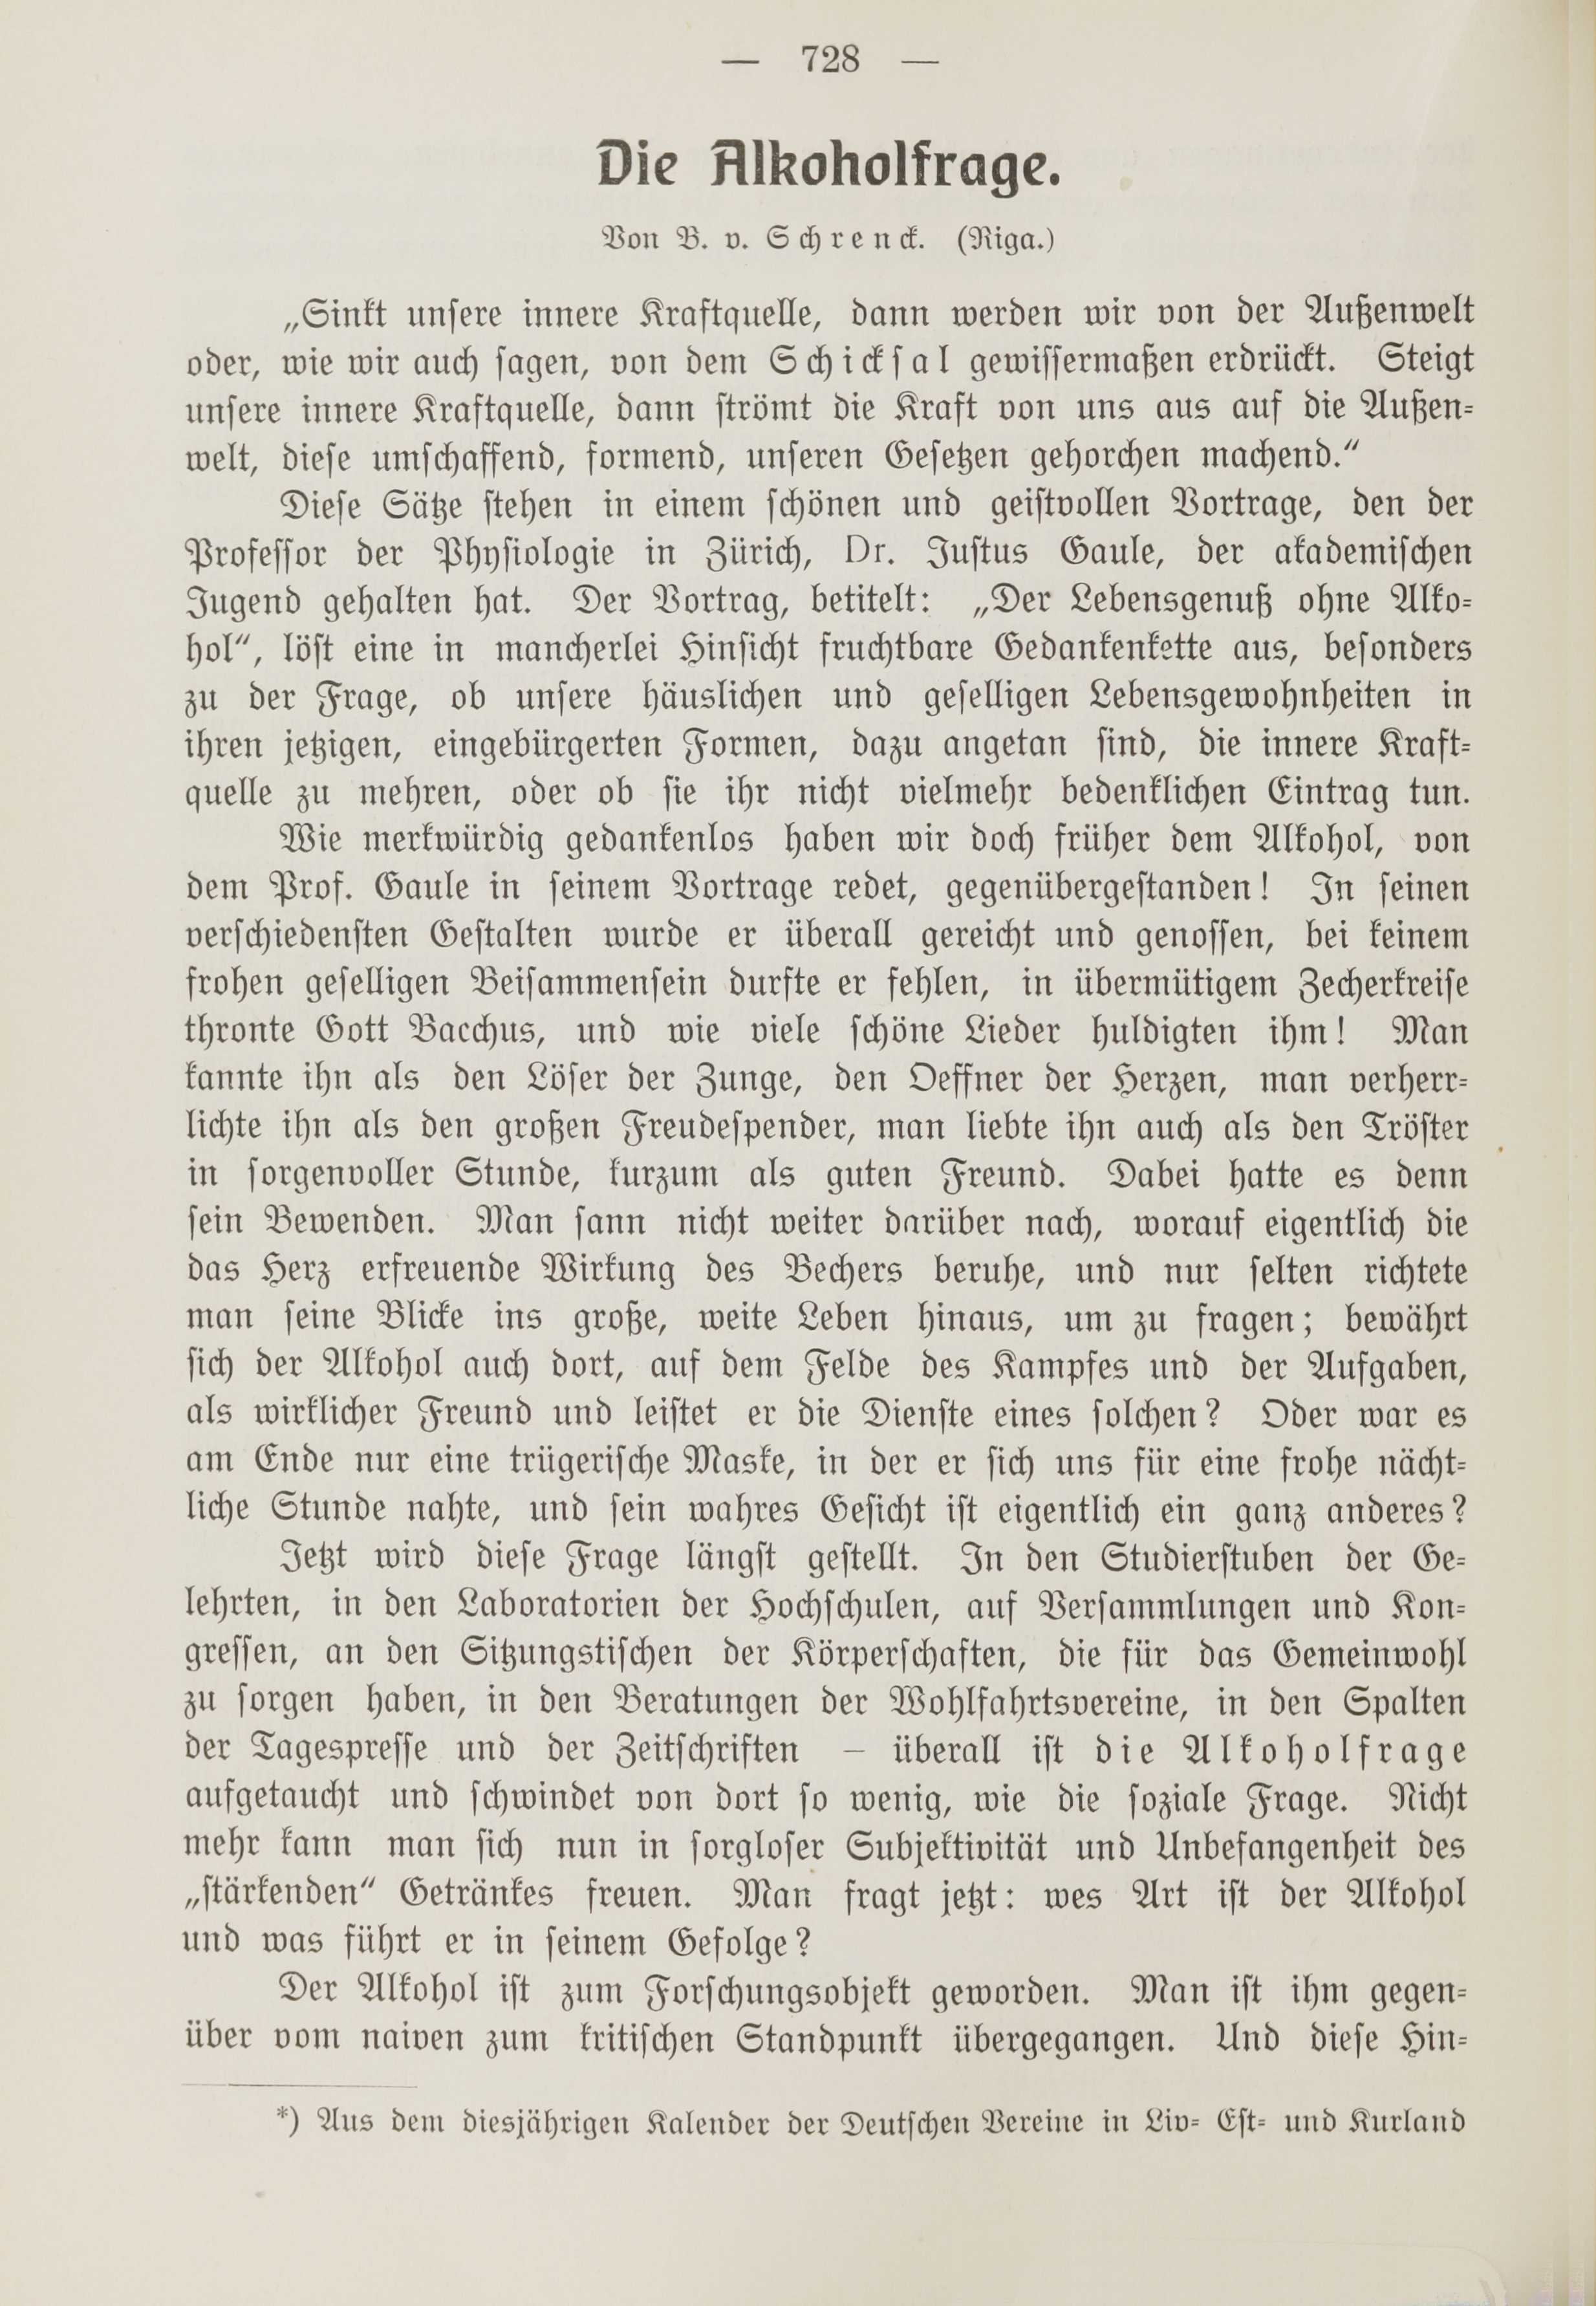 Die Alkoholfrage (1912) | 1. (728) Основной текст